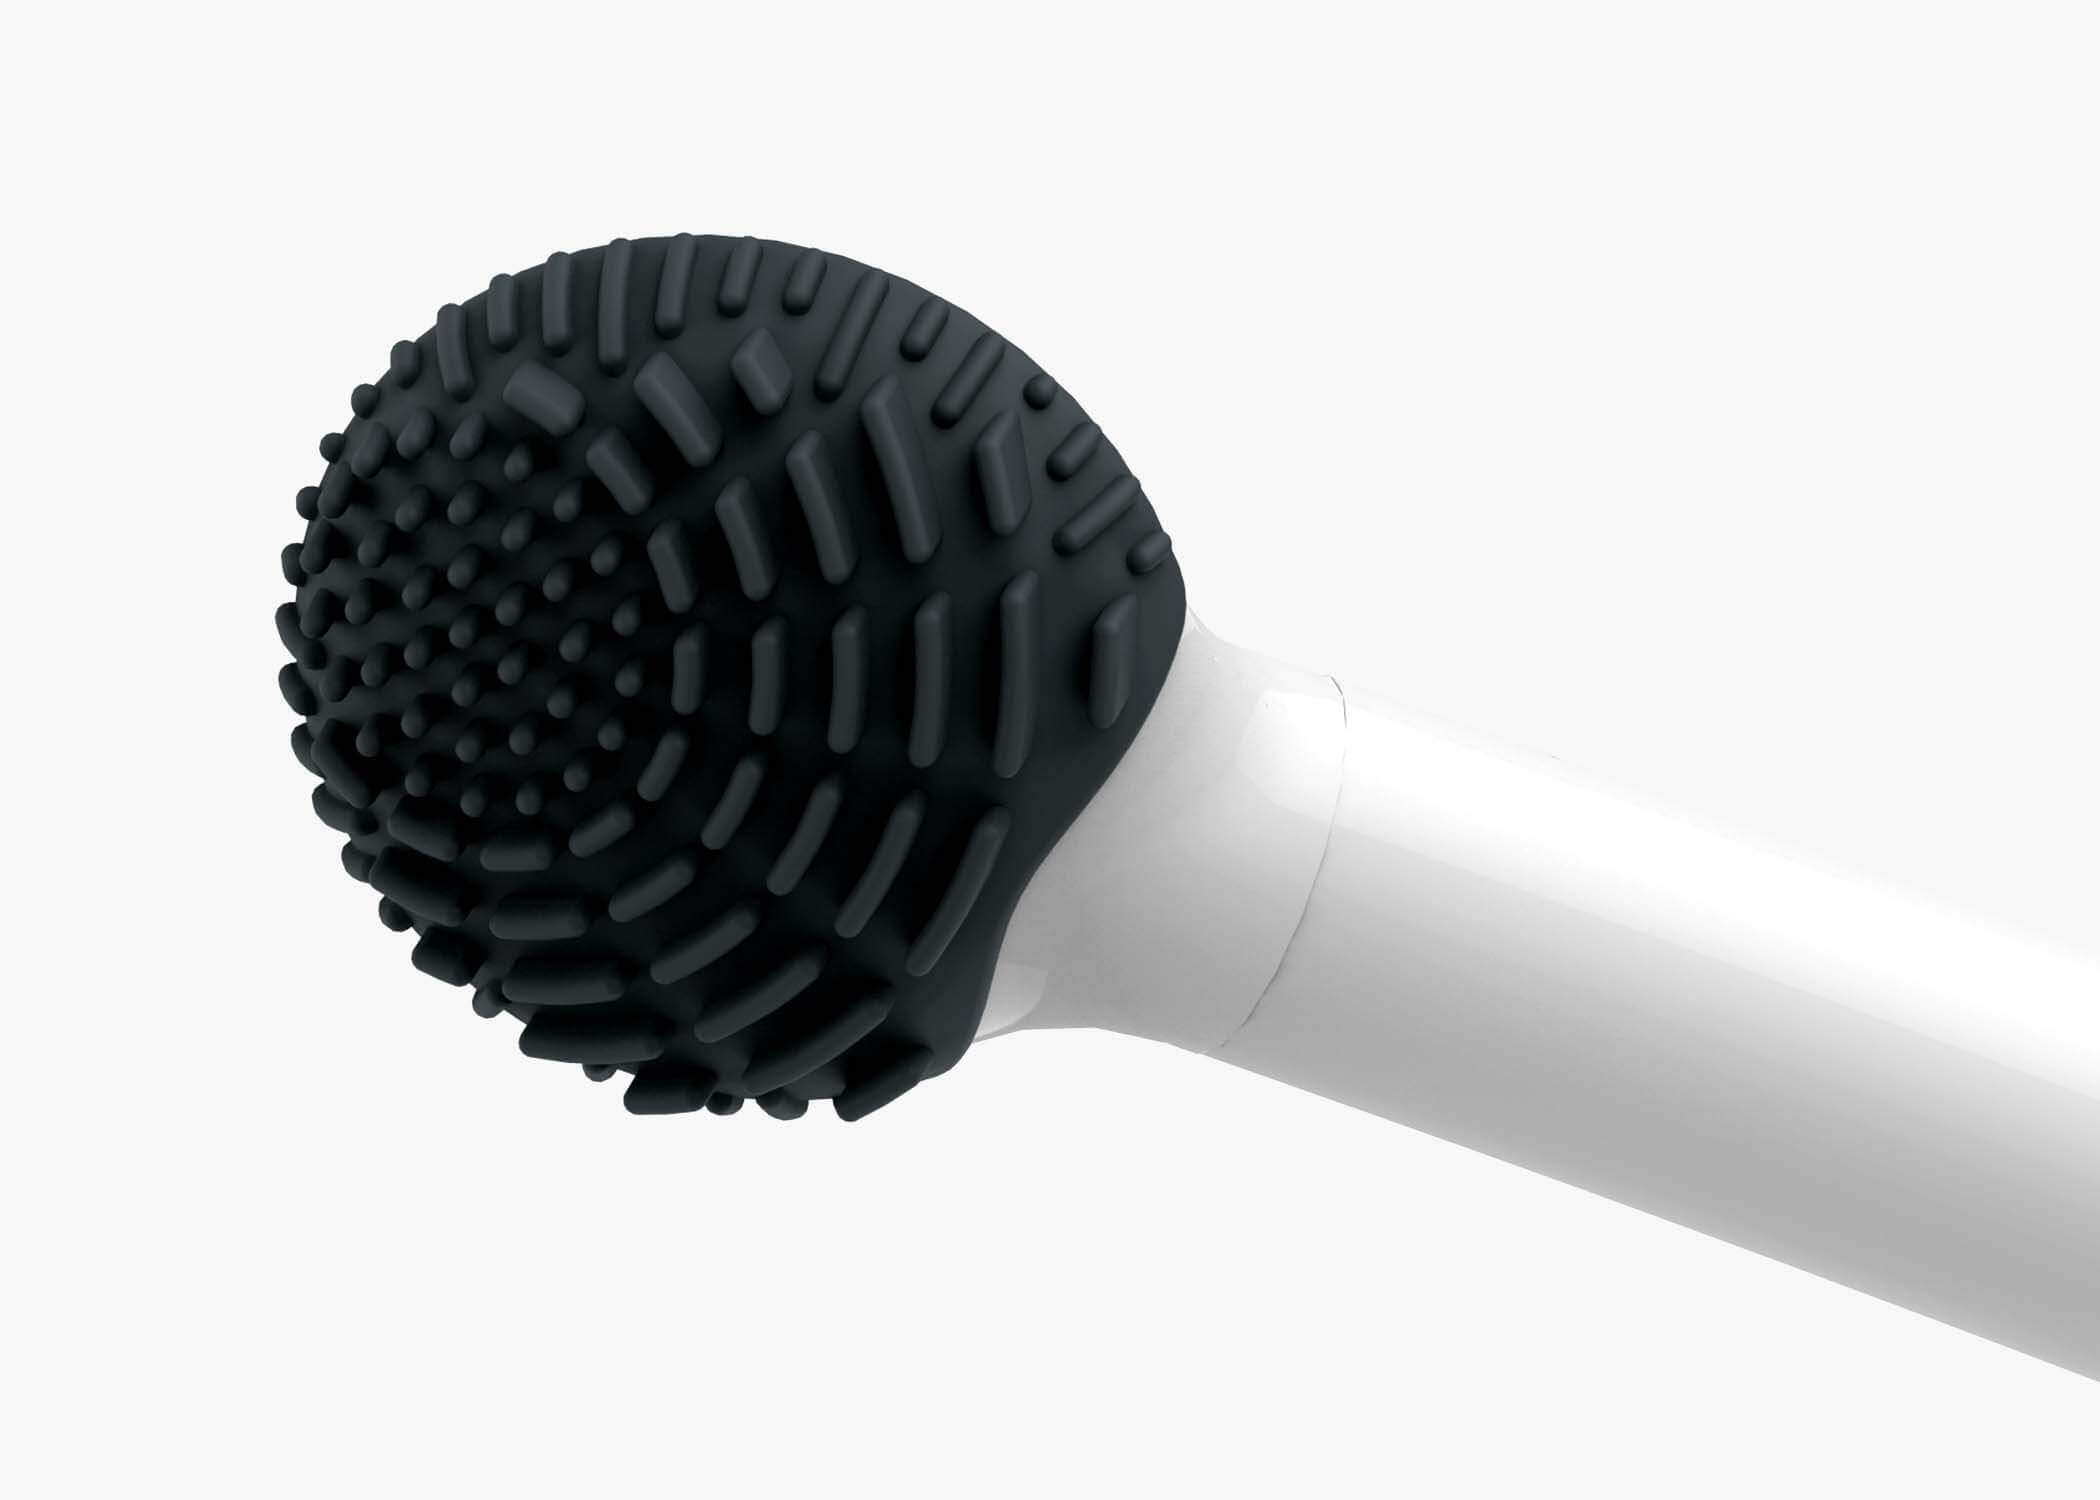 Flushbrush product design 2